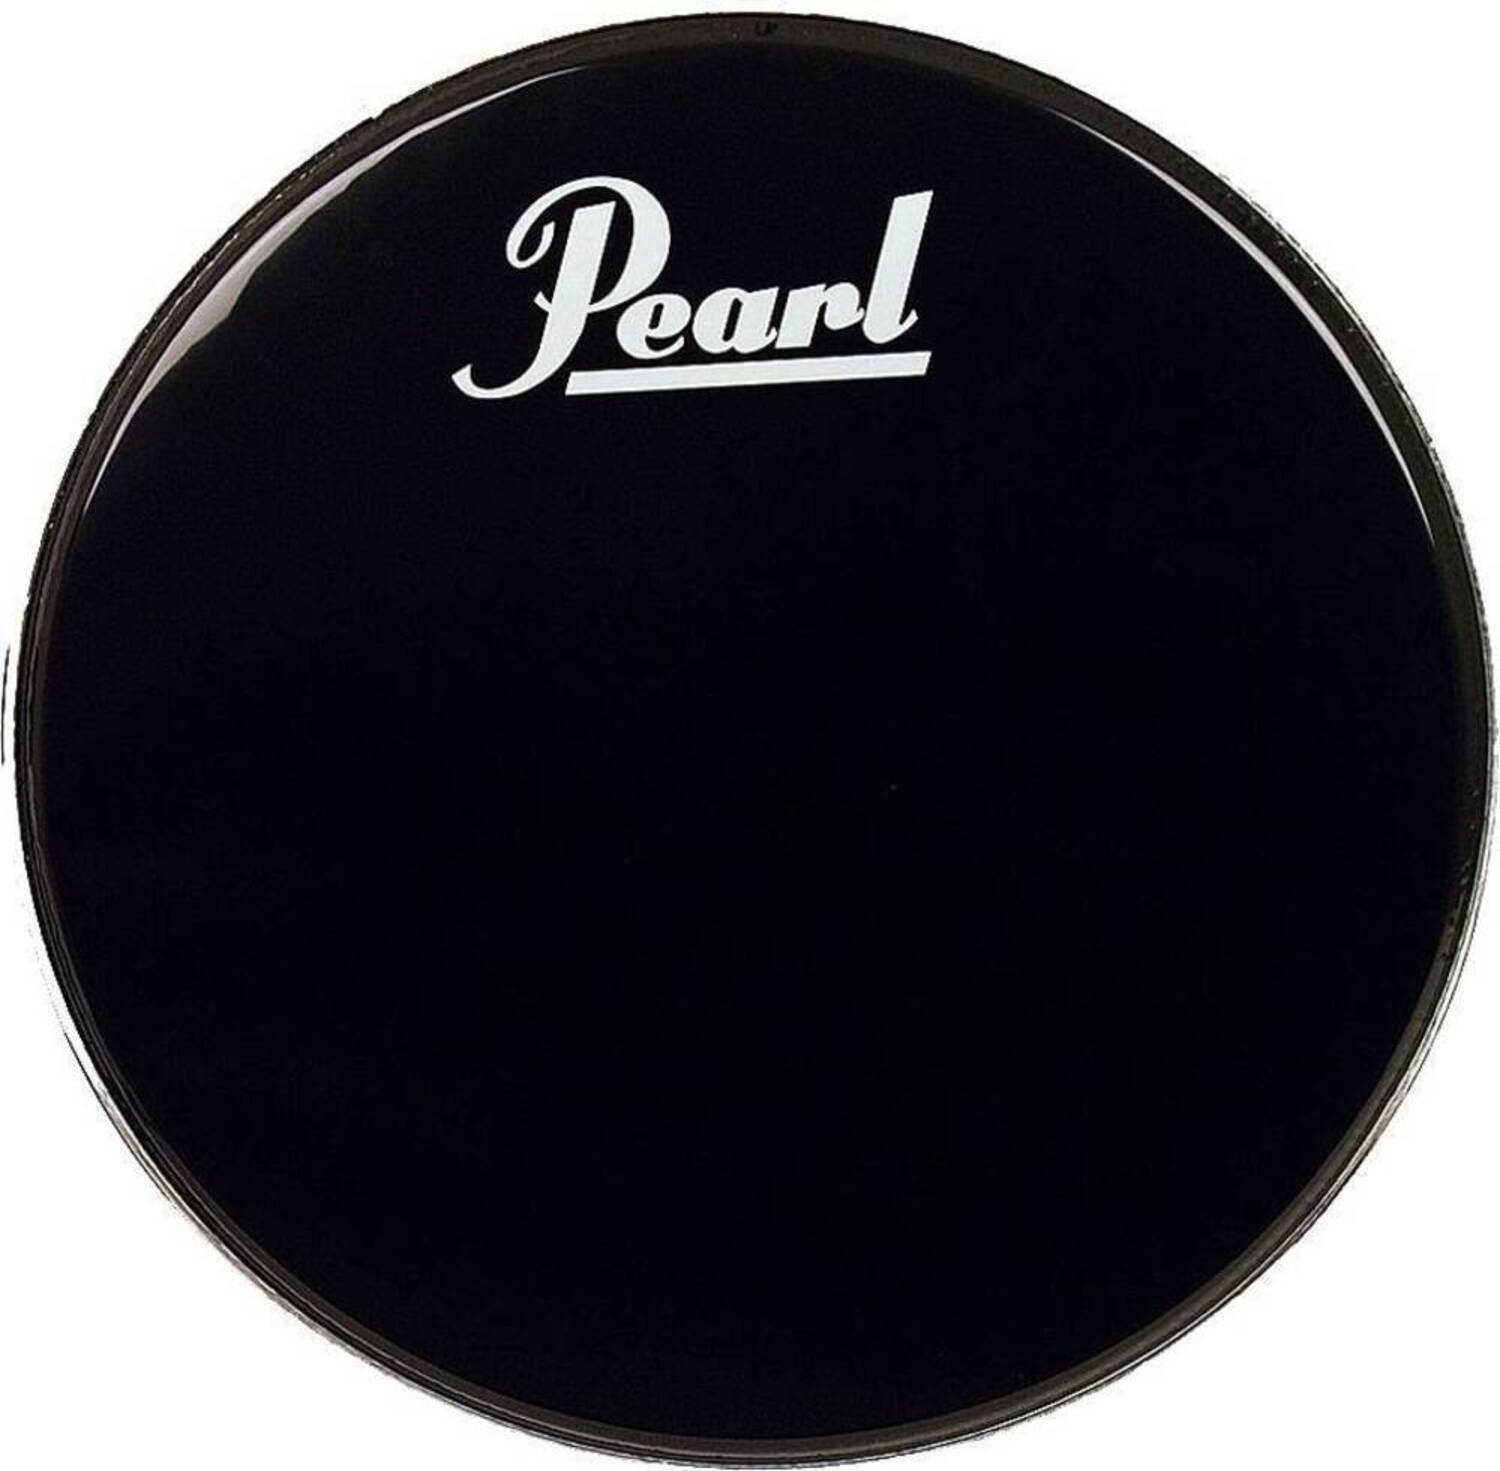 Прочие аксессуары для ударных инструментов Pearl EB-24BDPL педали для ударных установок колотушки pearl p 1032